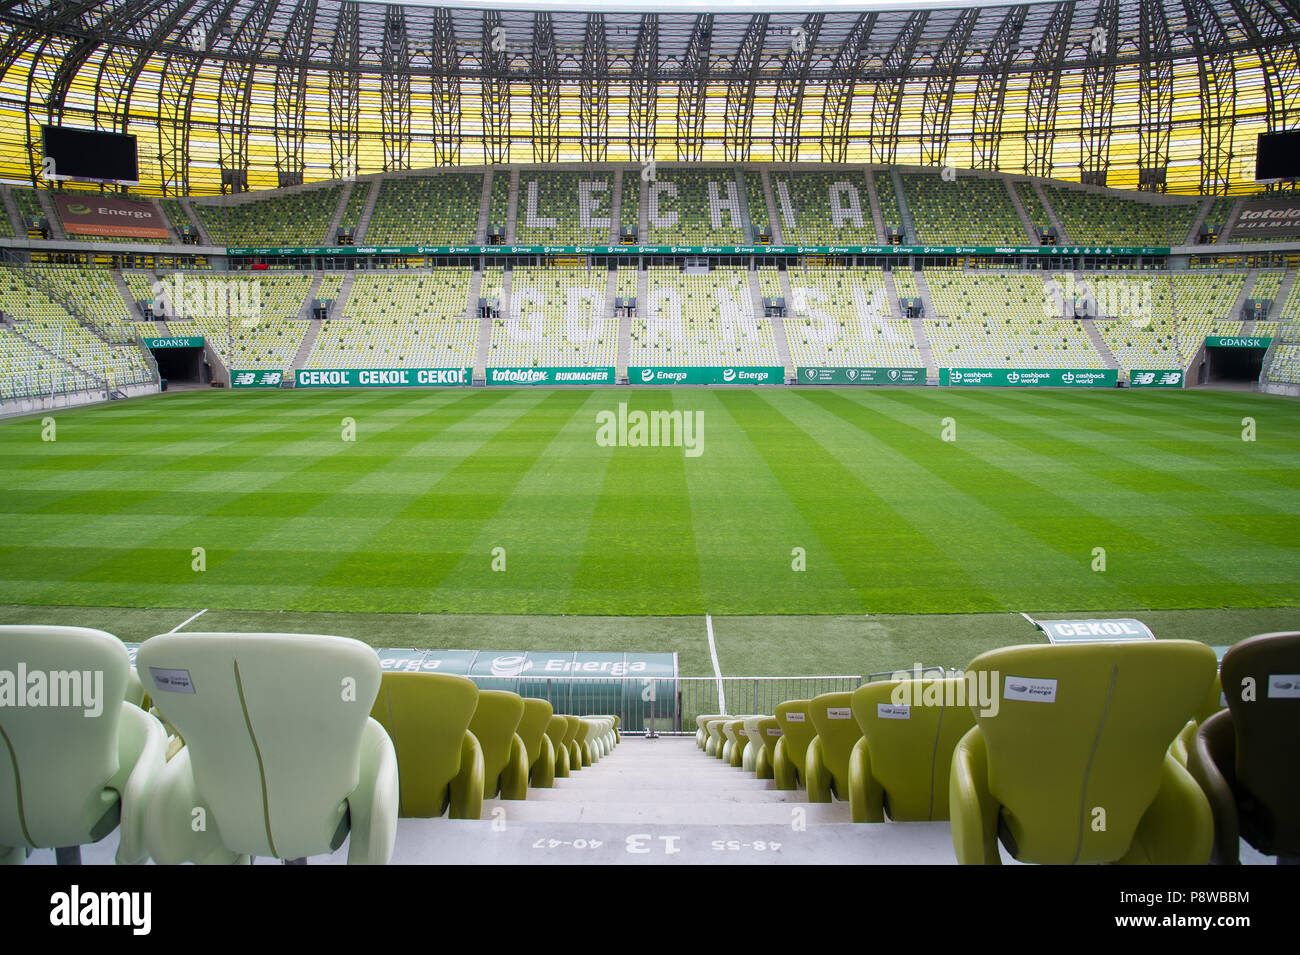 Stadion Energa Danzig, Heimat von Lechia Gdansk Fußballmannschaft, in Danzig, Polen. 23. Juni 2018 © wojciech Strozyk/Alamy Stock Foto Stockfoto